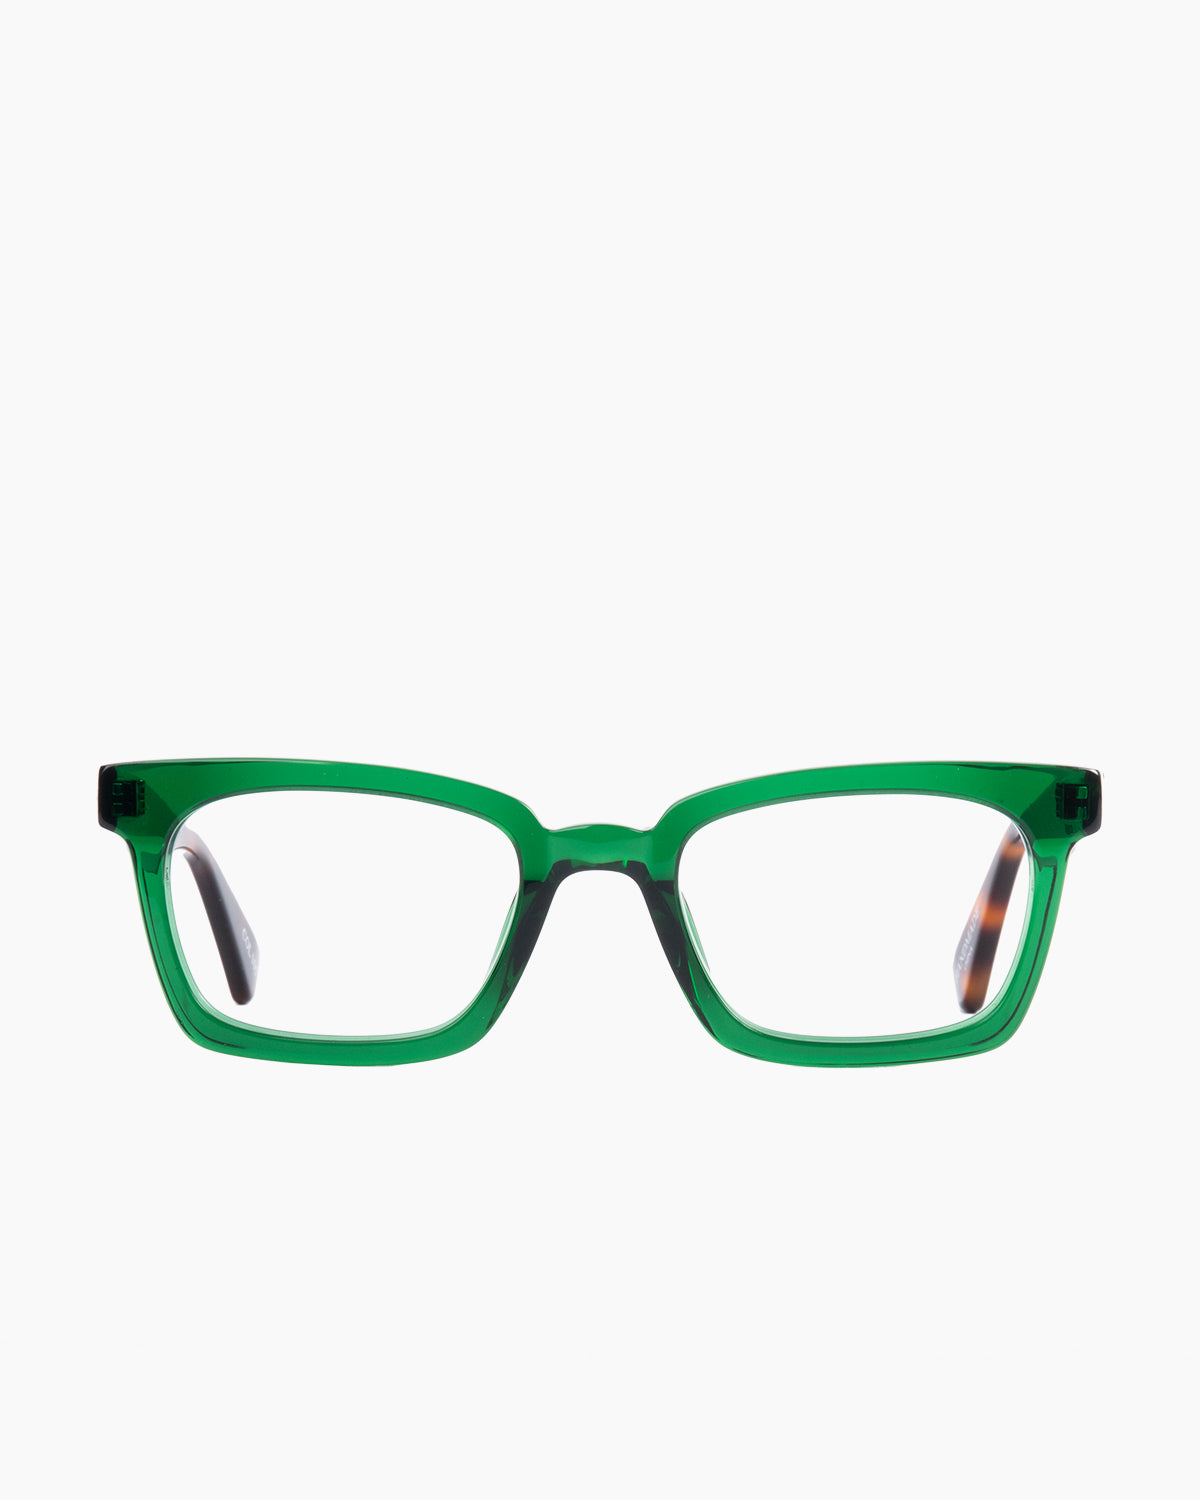 Evolve - Como - 105 | glasses bar:  Marie-Sophie Dion